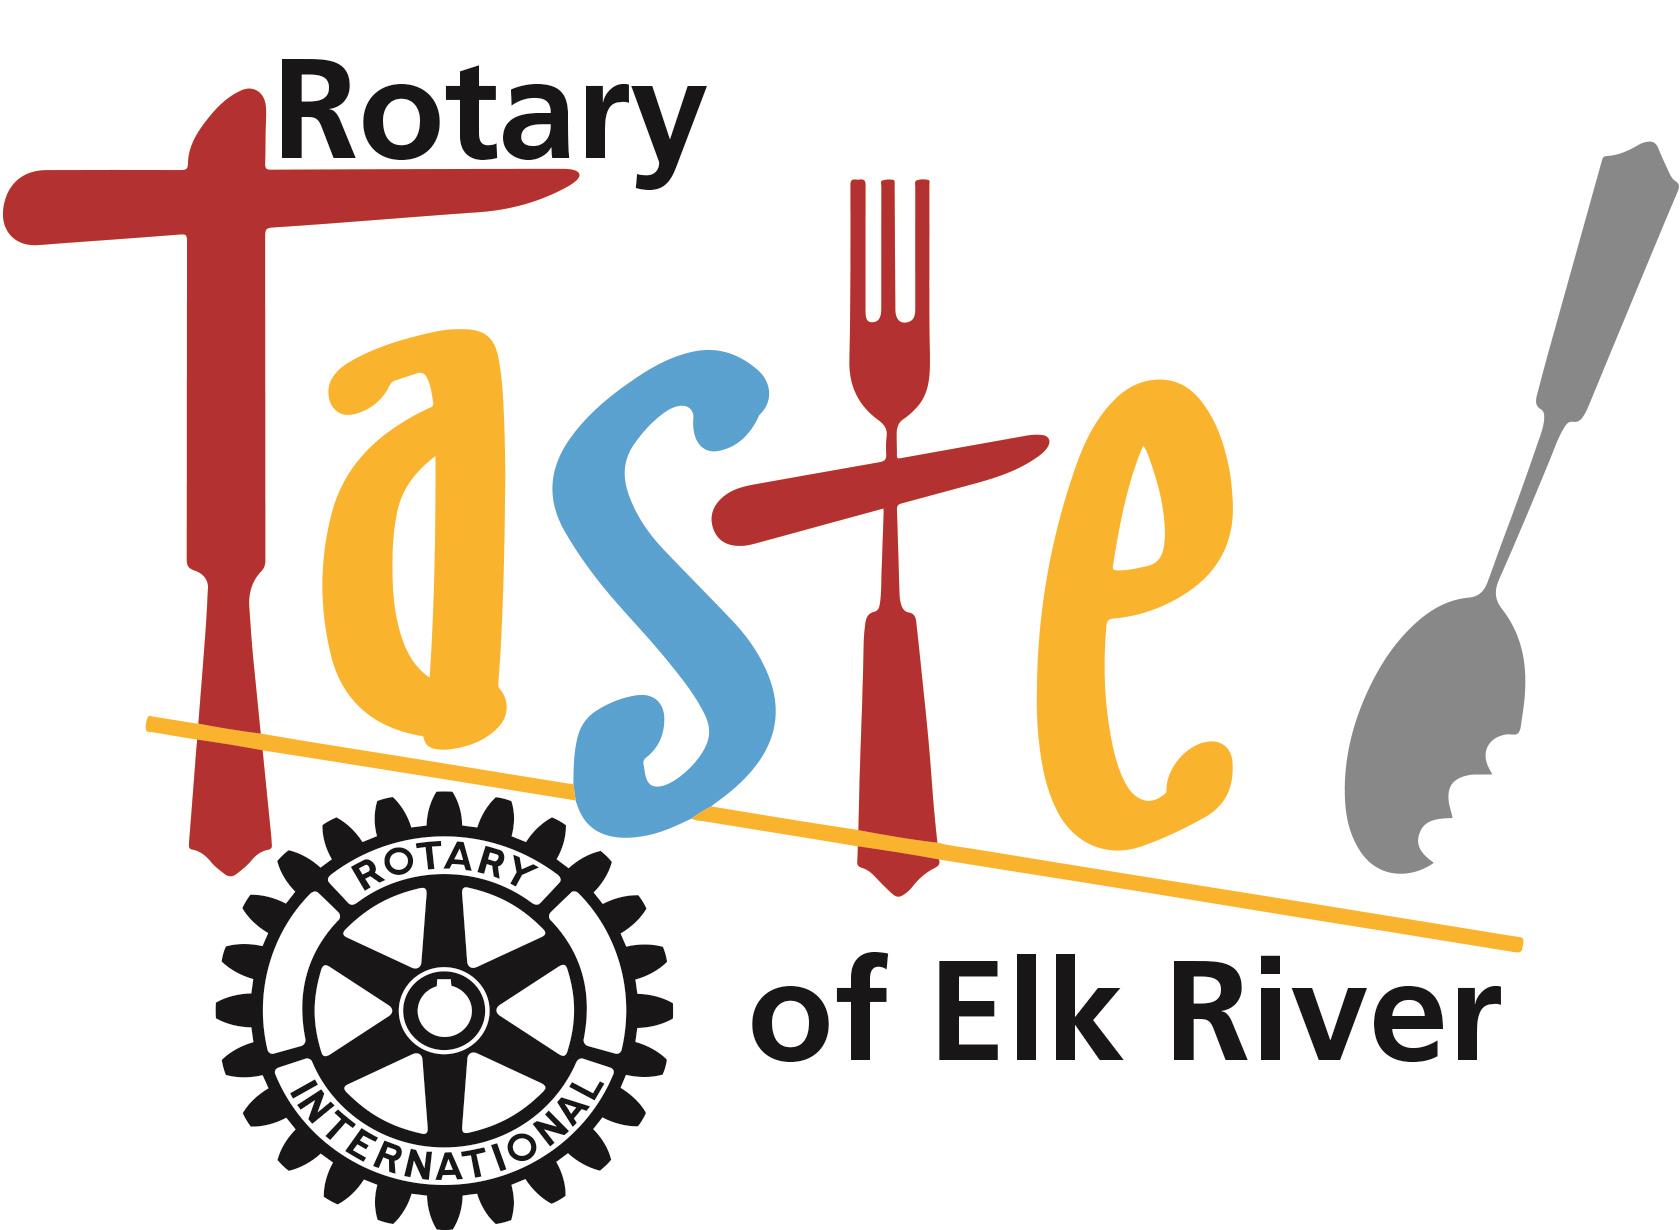 Taste of Elk River